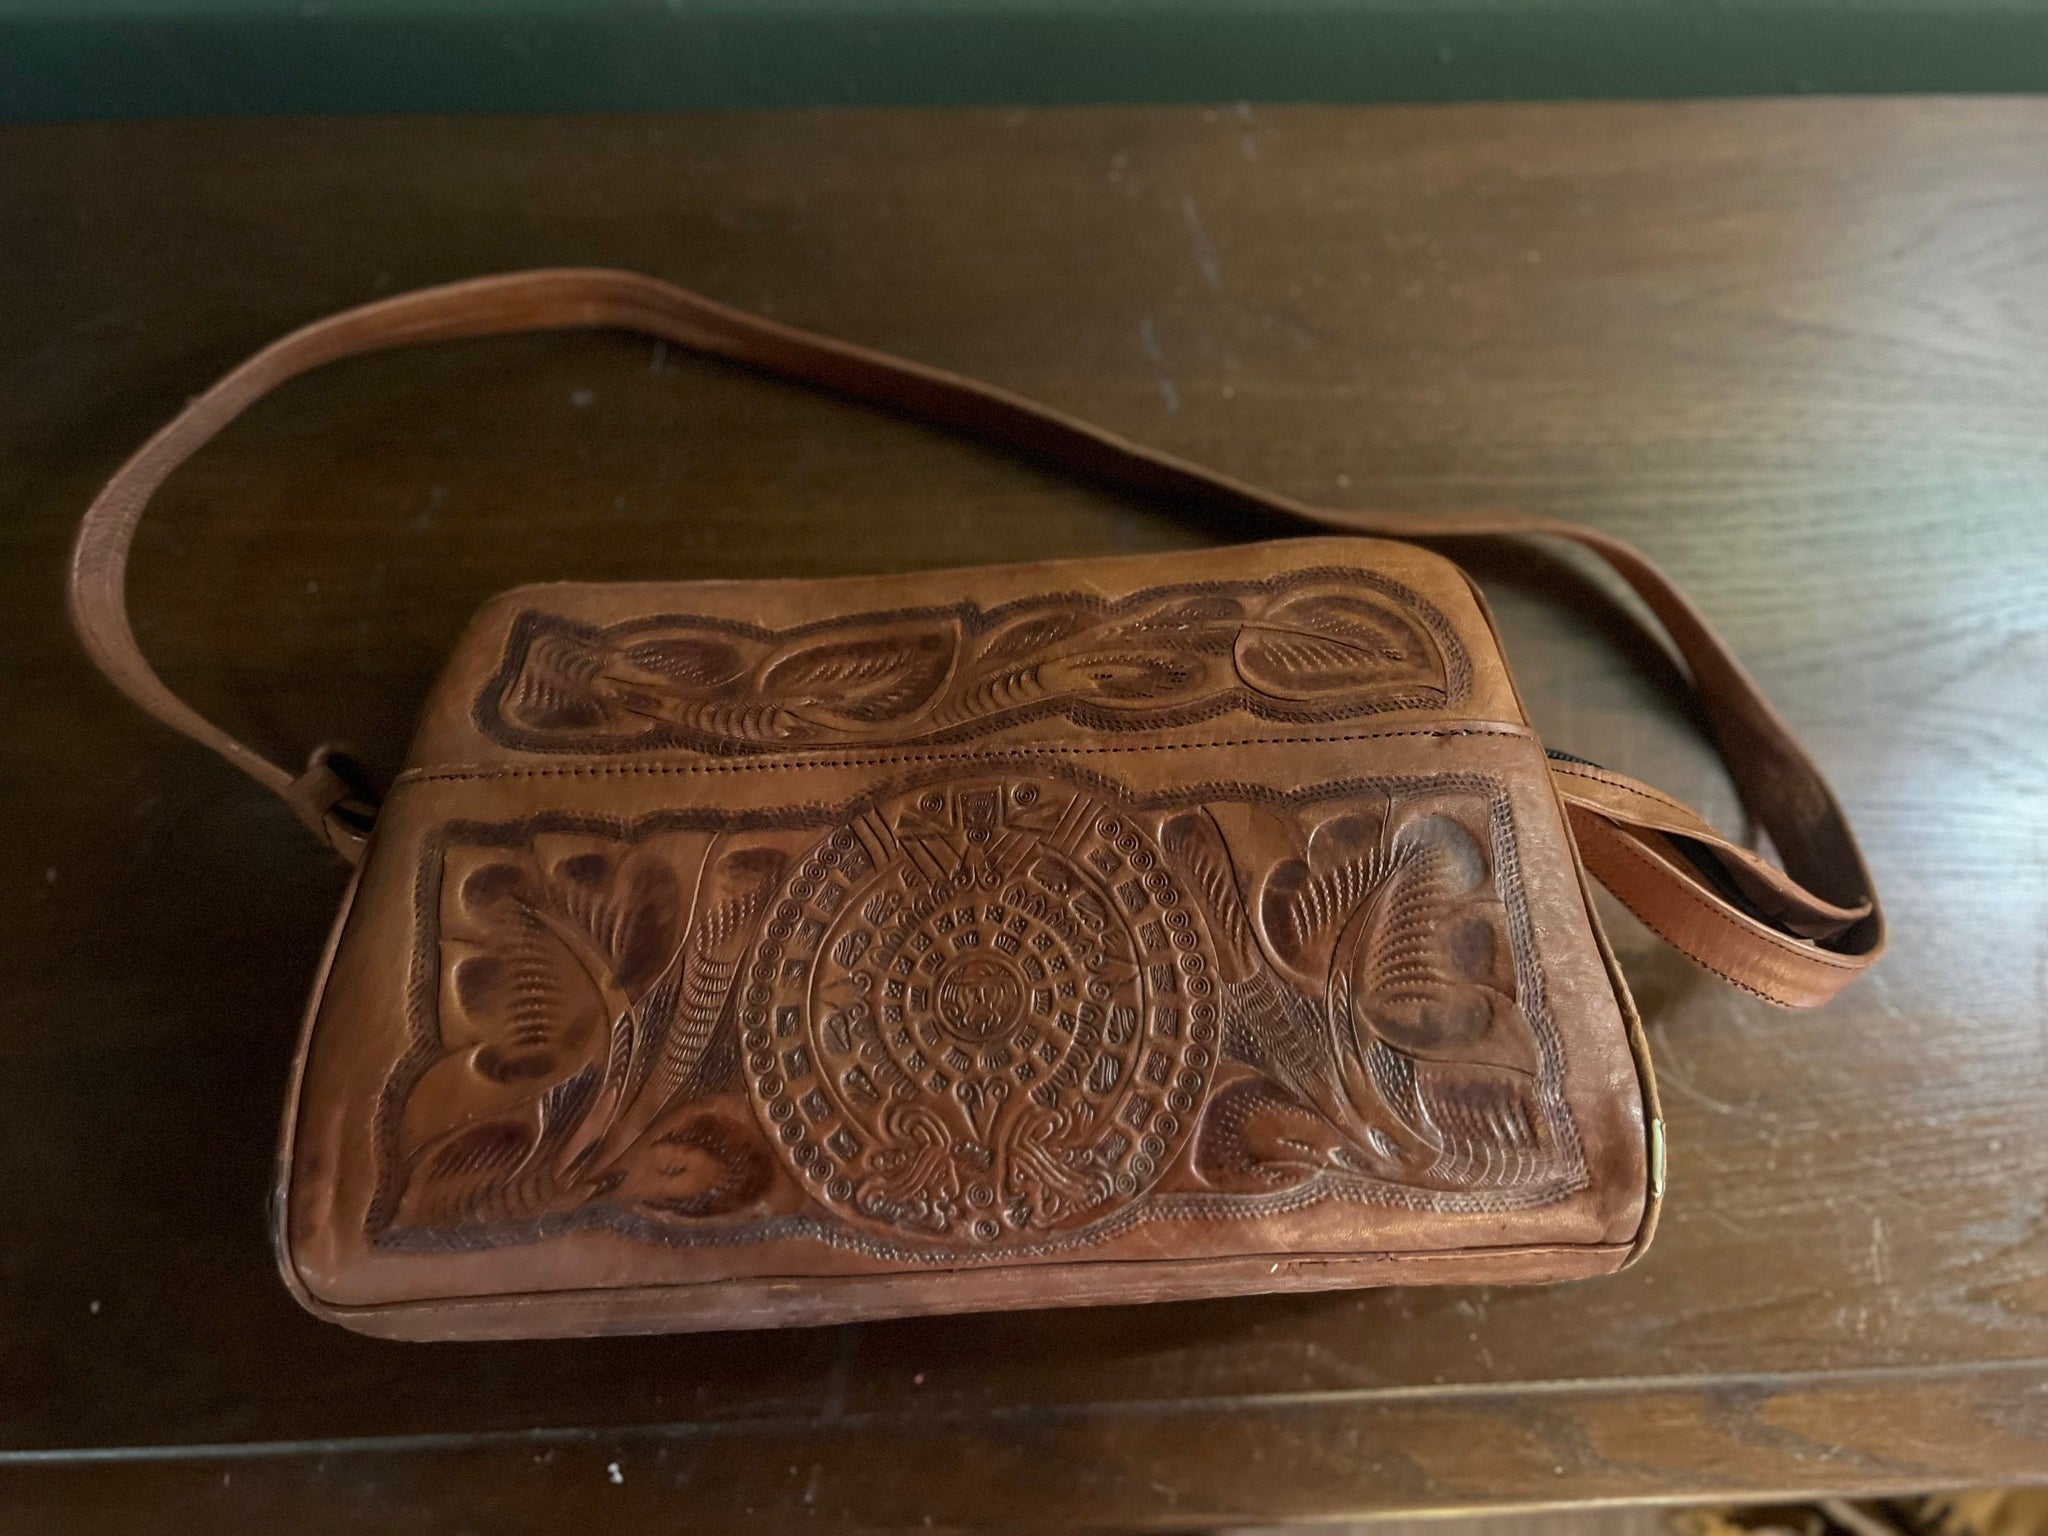 Vintage tooled leather purse handbag